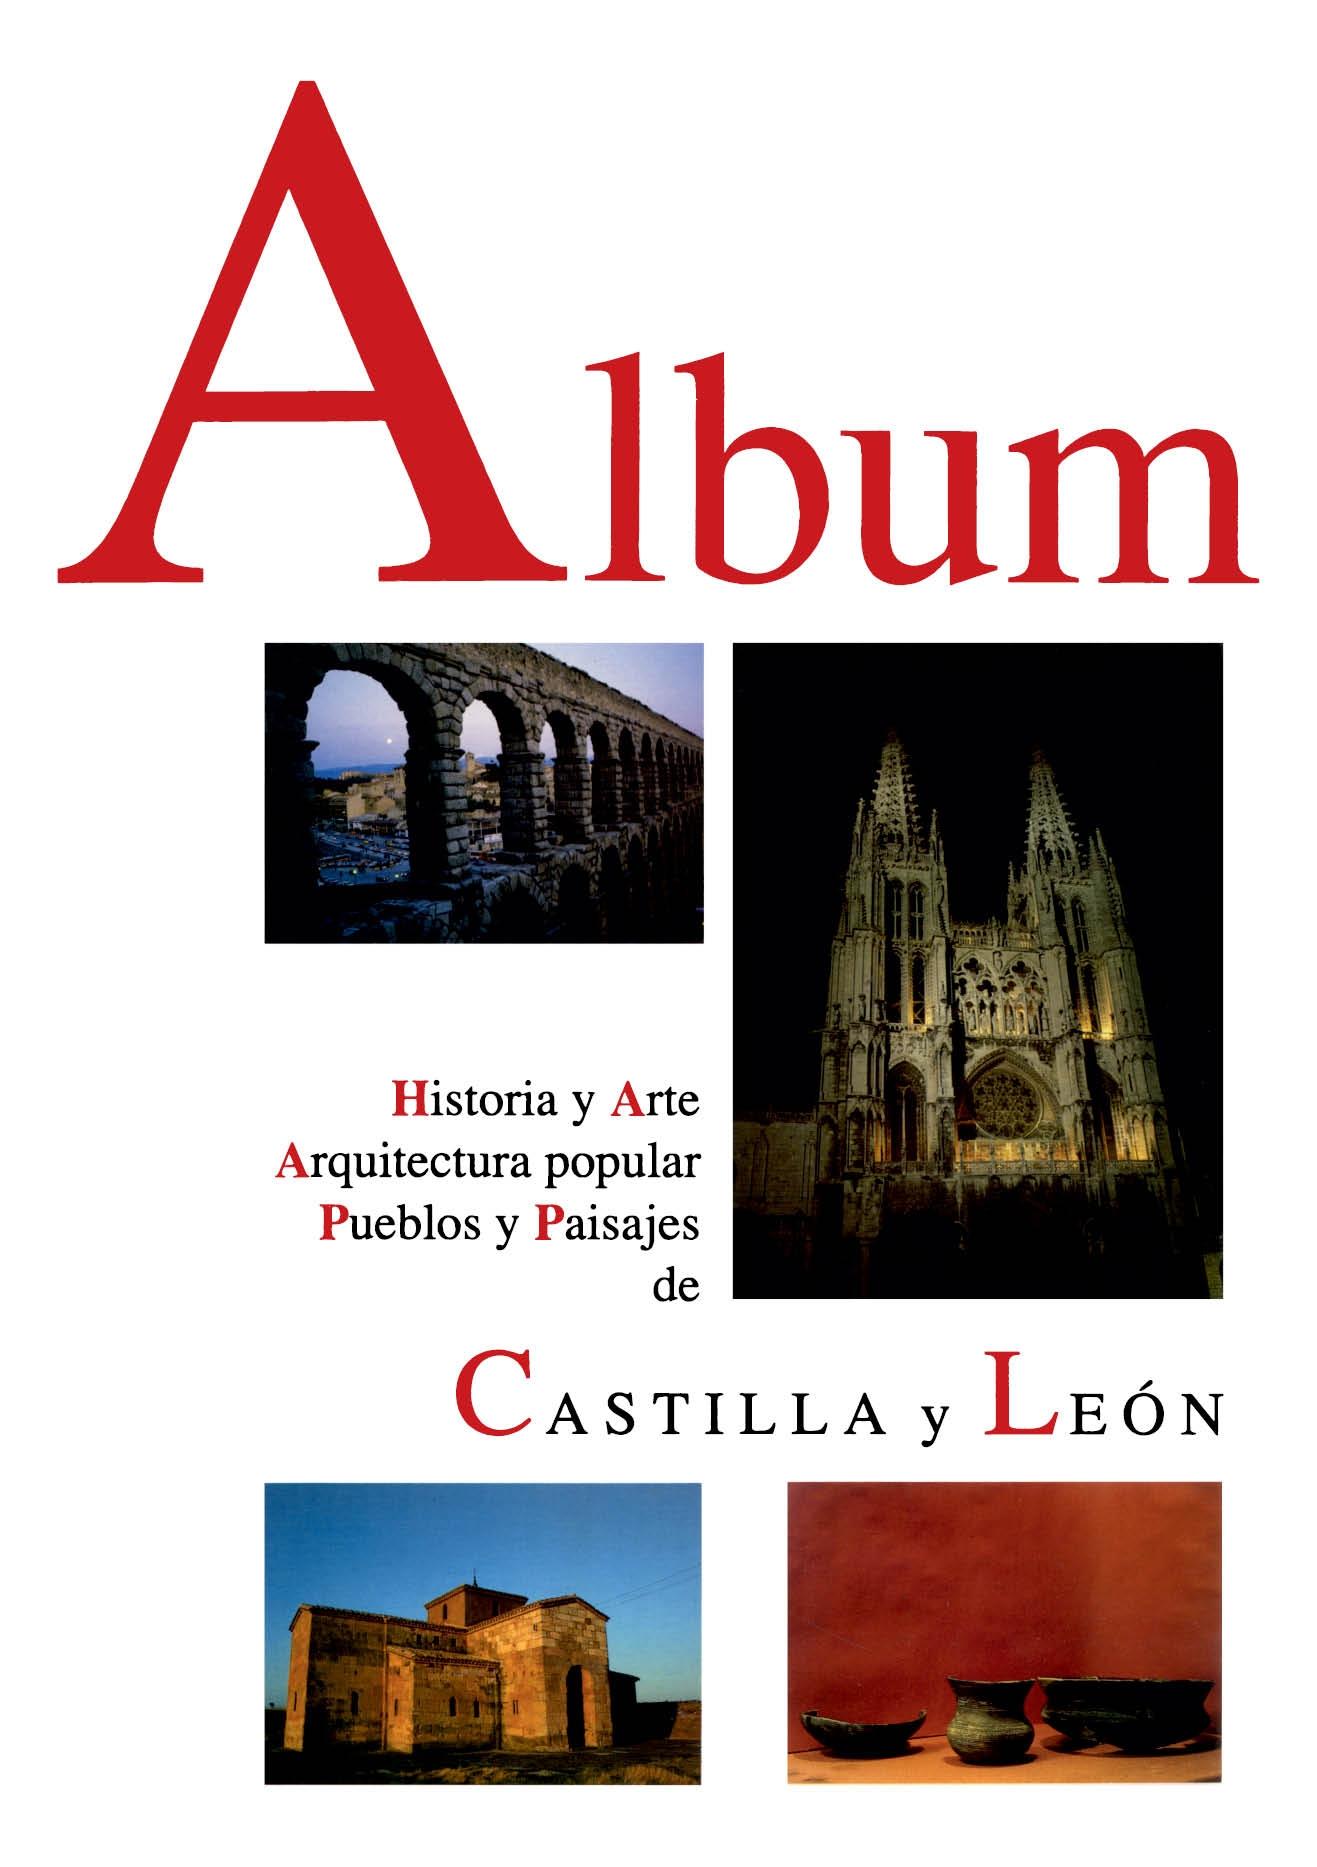 ALBUM. HISTORIA Y ARTE, ARQUITECTURA POPULAR, PUEBLOS Y PAISAJES DE CASTILLA Y LEON "(ALBUM DE CASTILLA Y LEÓN)". 